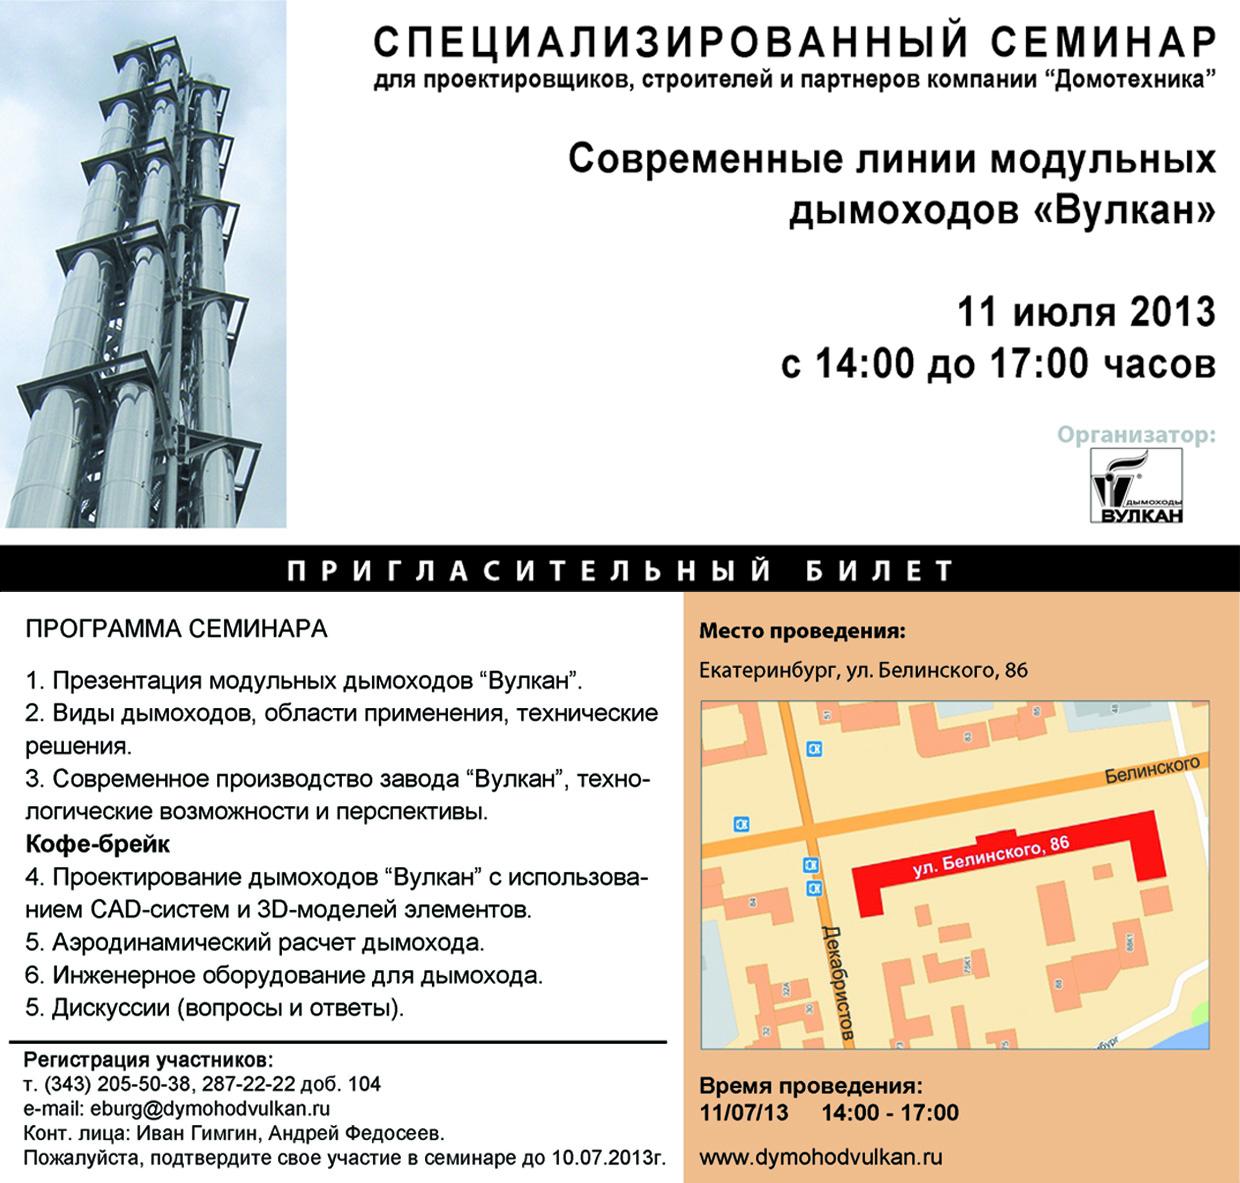 В июле 2013 г. в Екатеринбурге и Новосибирске пройдет серия специализированных семинаров "Модульные дымоходы "Вулкан"